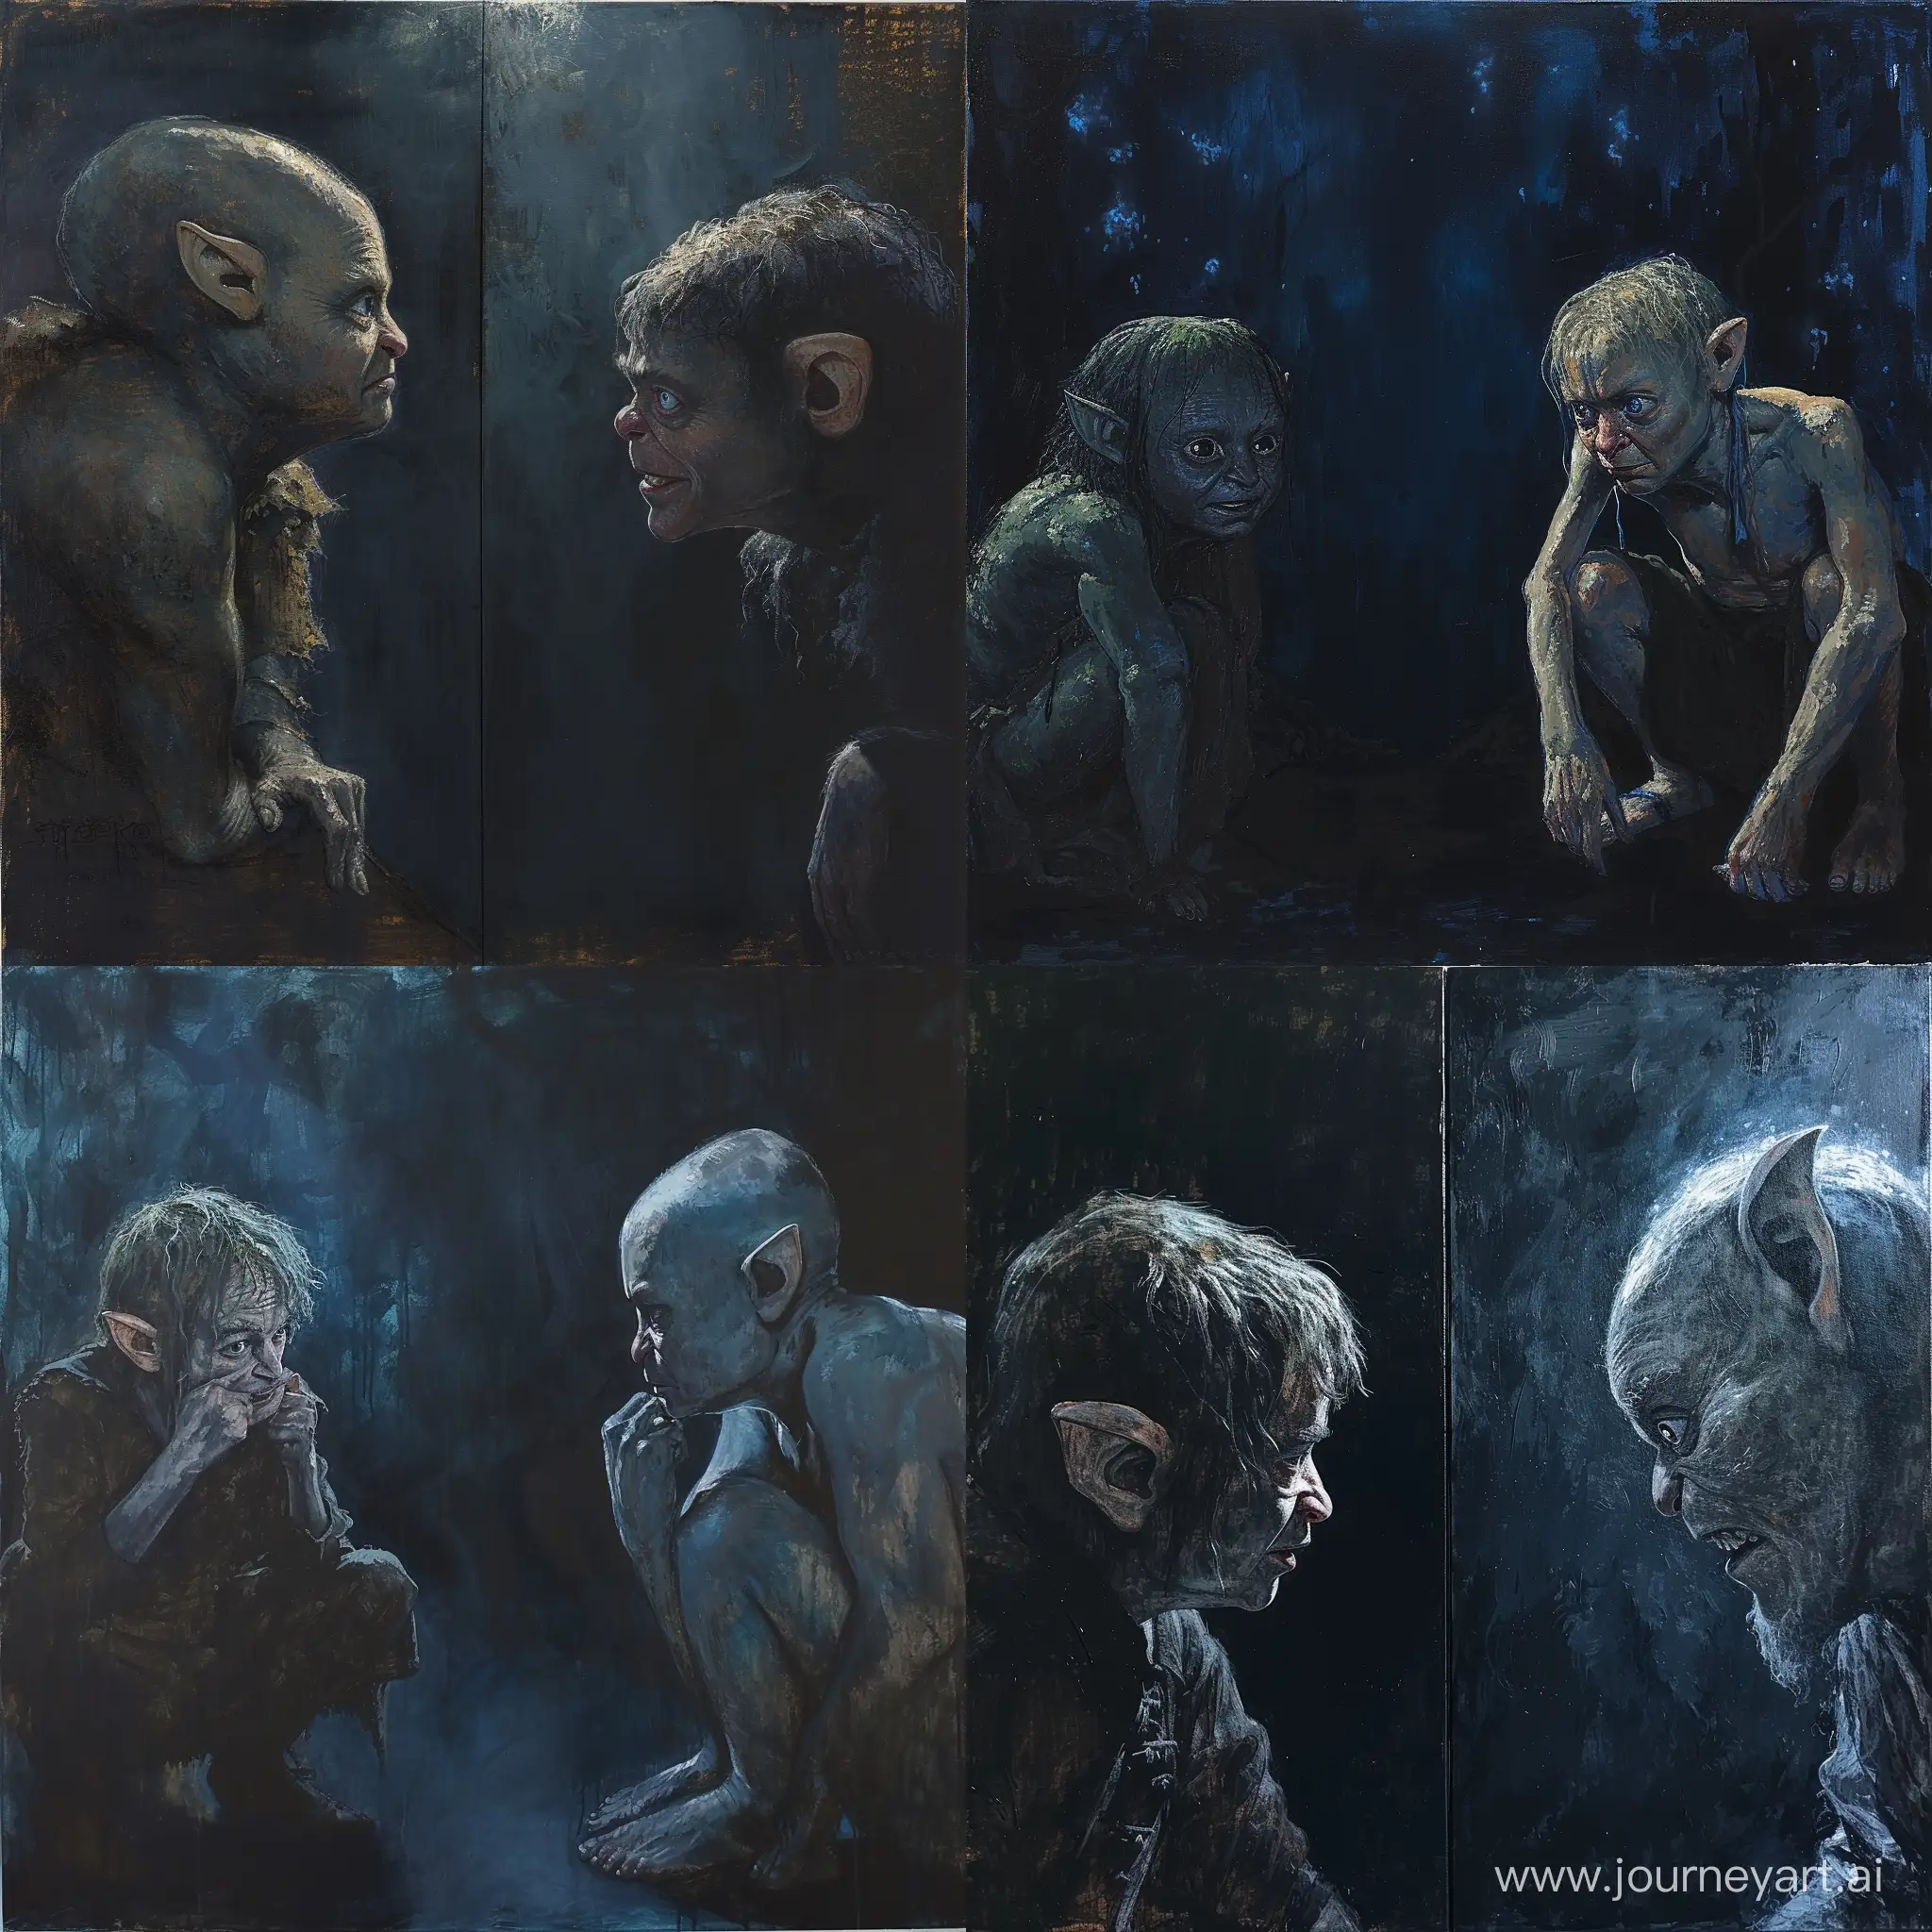 Bilbos-Psychological-Duel-with-Gollum-in-Dark-Acrylic-Art